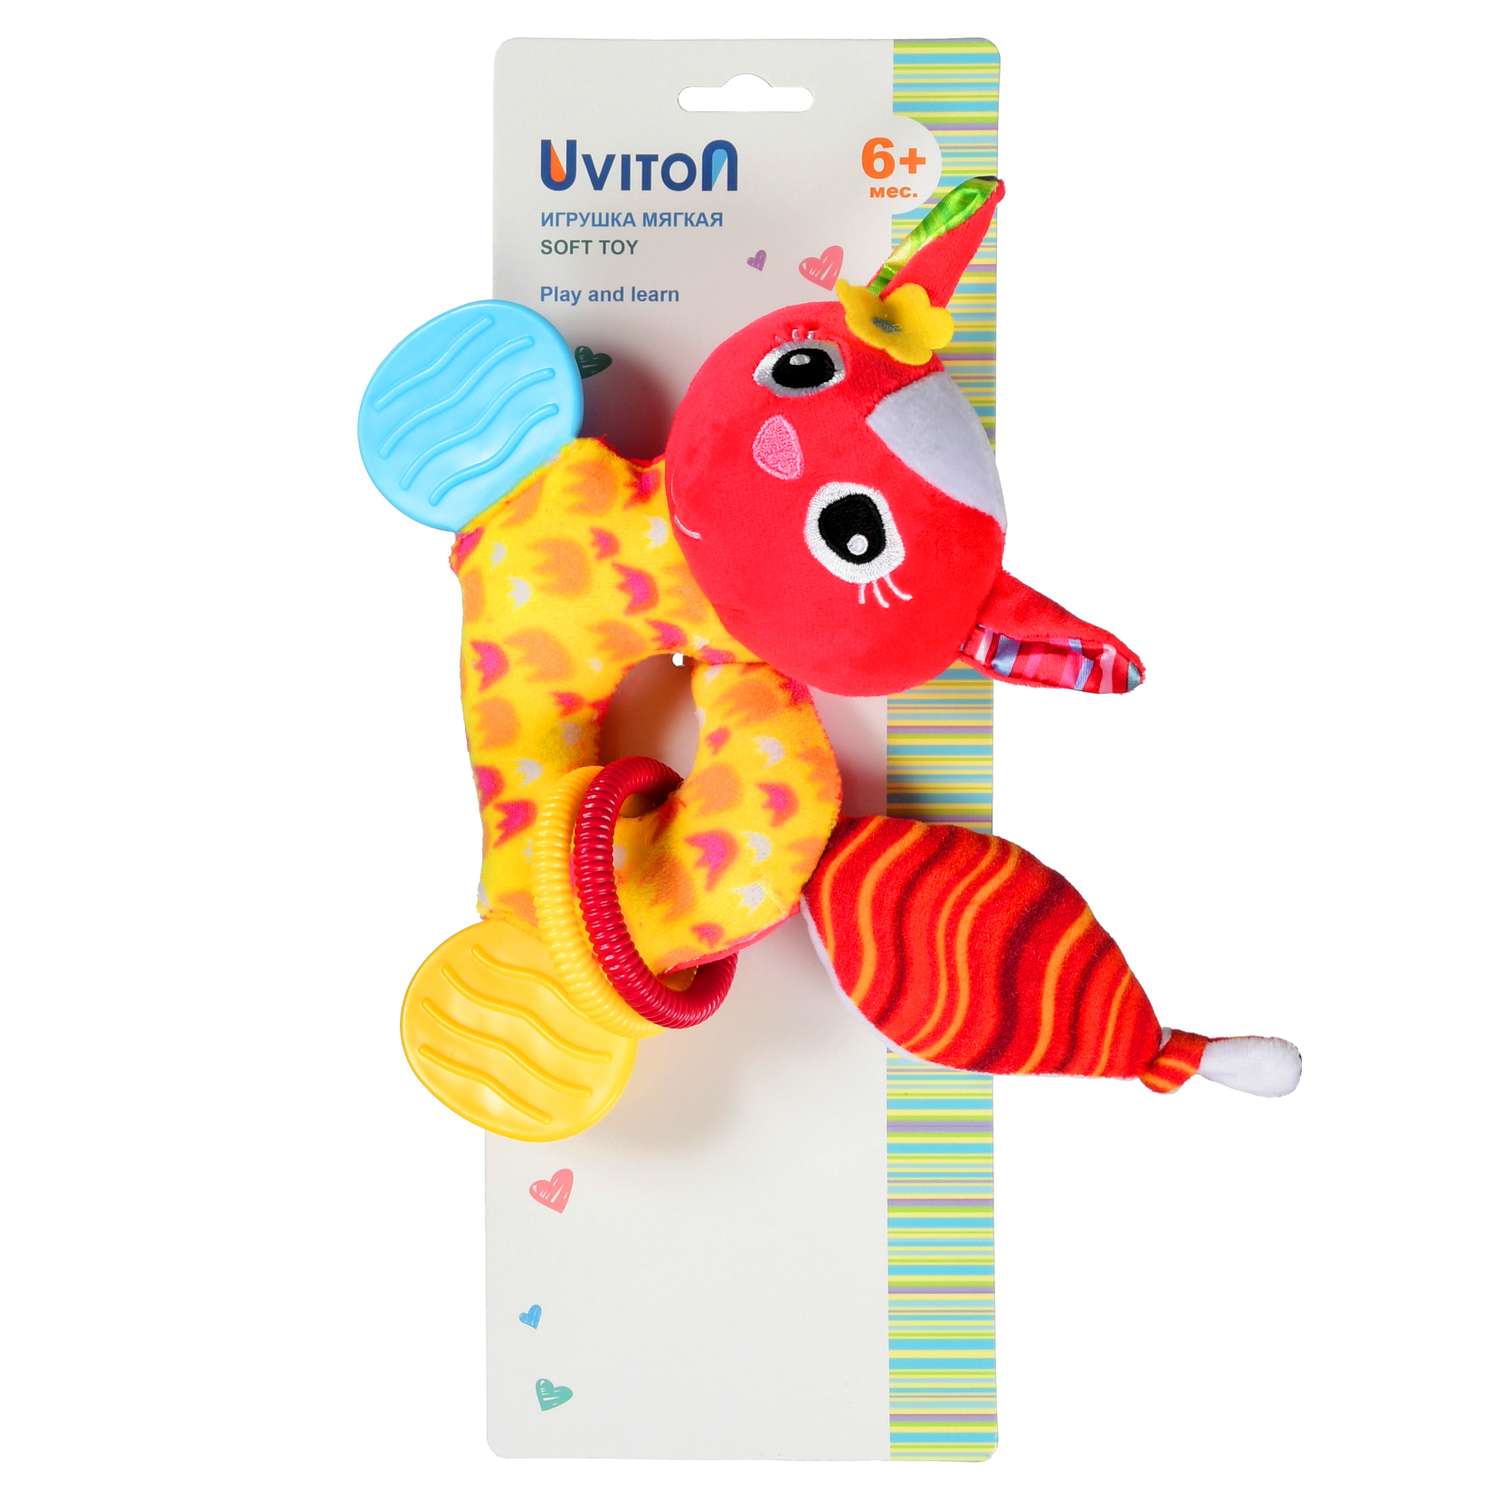 Мягкая игрушка Uviton с прорезывателем и погремушкой Bright friend Котик - фото 6